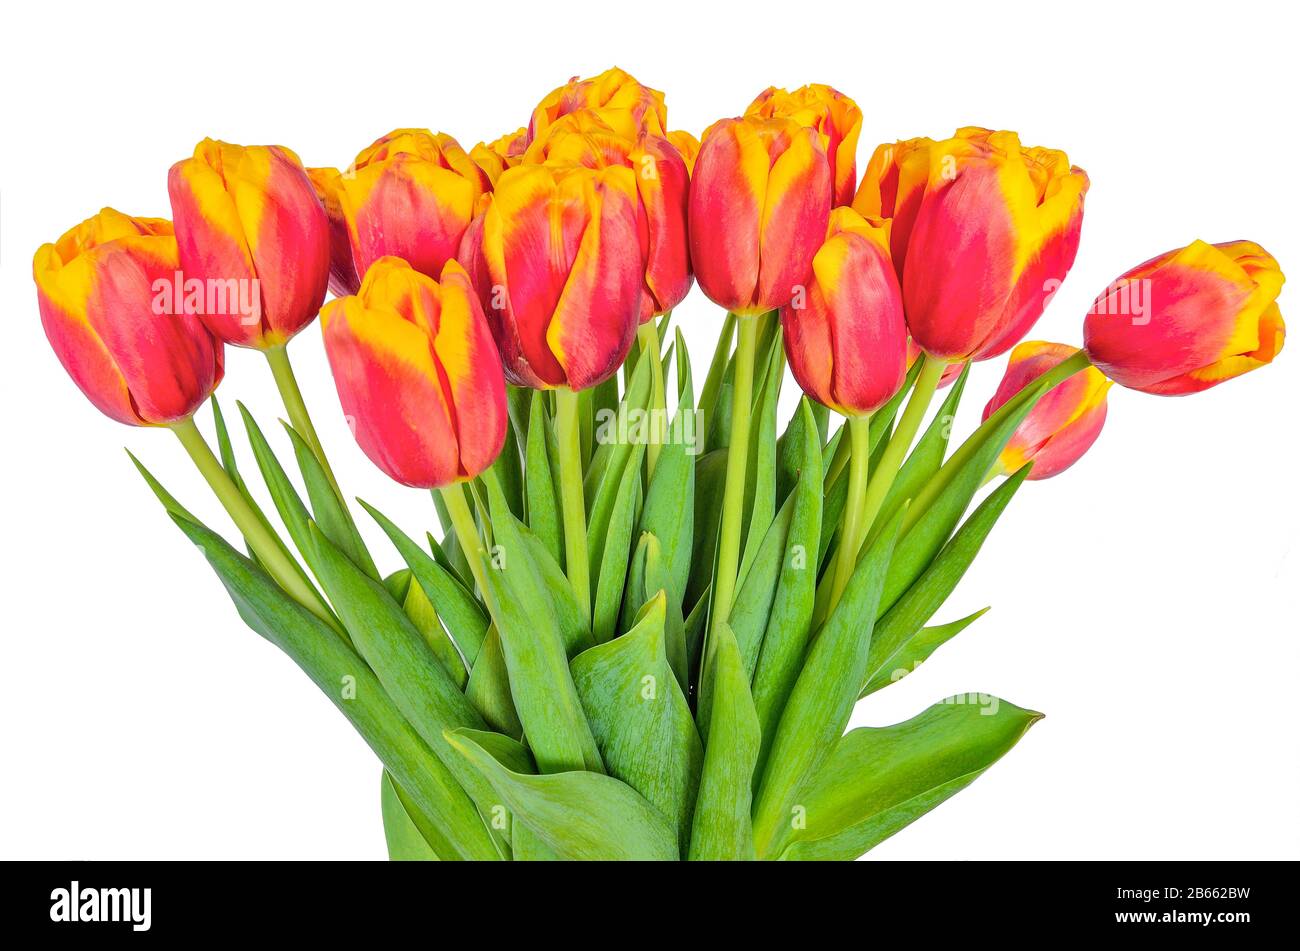 Frischer Frühlings-Blumenstrauß aus Rot mit gelben Tulpen auf weißem Hintergrund isoliert. Leuchtend rote Blumen mit gelben Rändern von Kronblättern. Blühende Frühlingsblume Stockfoto